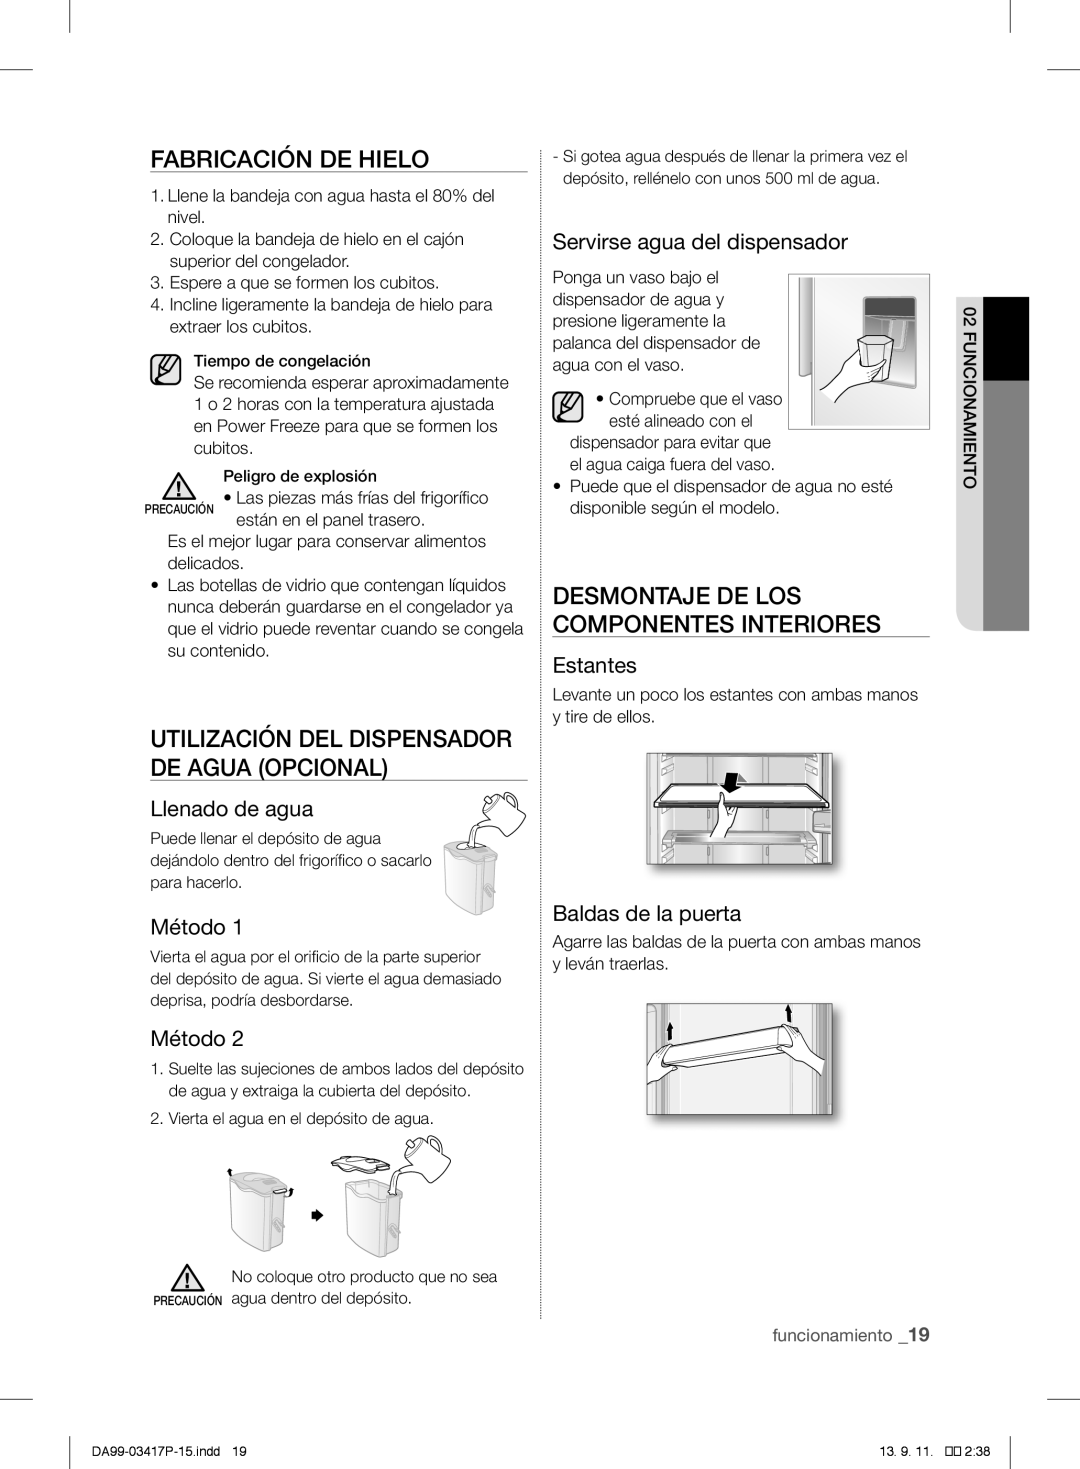 Samsung RL60GMBSW1/XEF manual Fabricación De Hielo, Utilización Del Dispensador De Agua Opcional, Llenado de agua, Método 